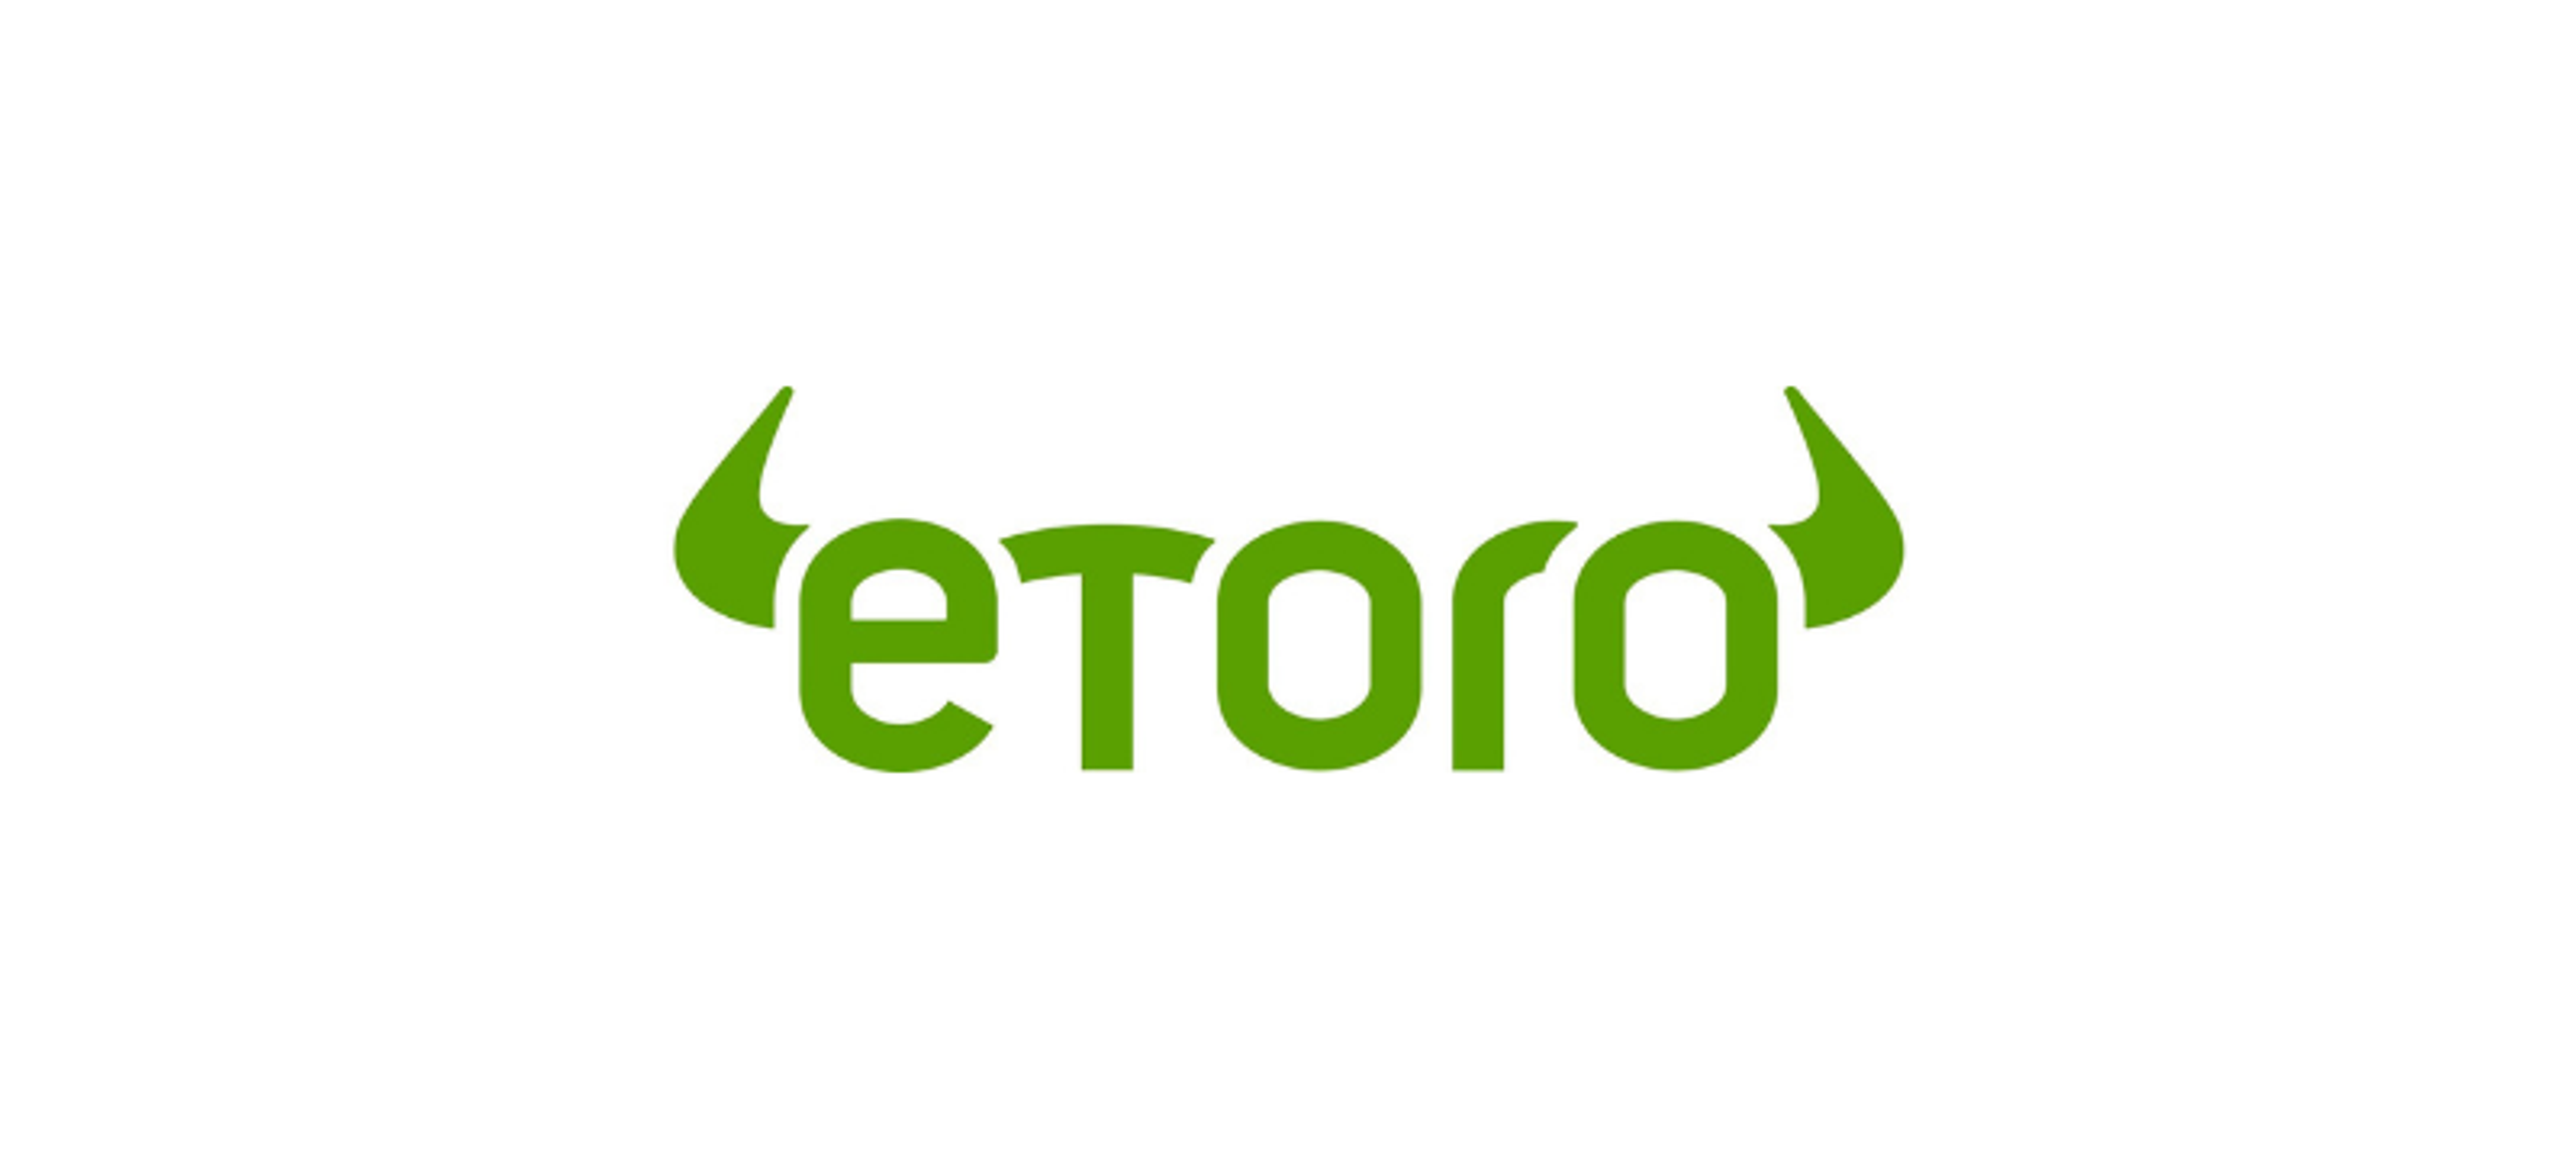 eToro Hones In On $1B Funding As SPAC Plans Setback